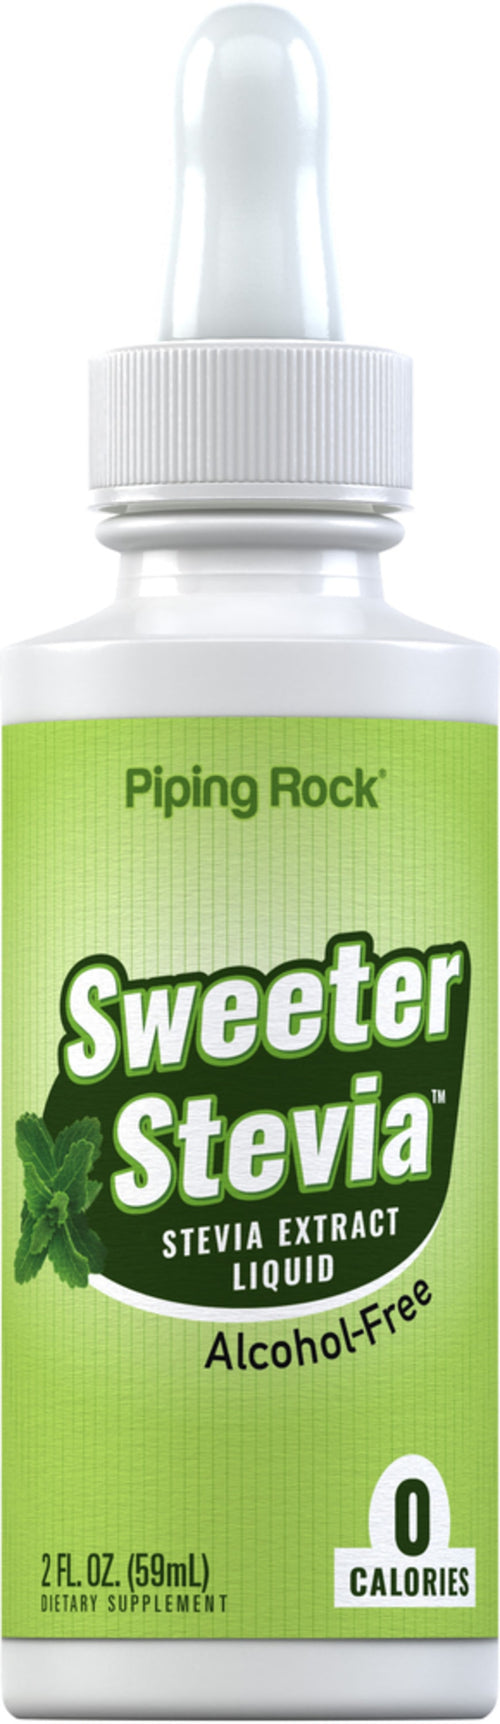 Sweeter Stevia Płyn 2 Uncje sześcienne 59 ml Butelka z zakraplaczem    